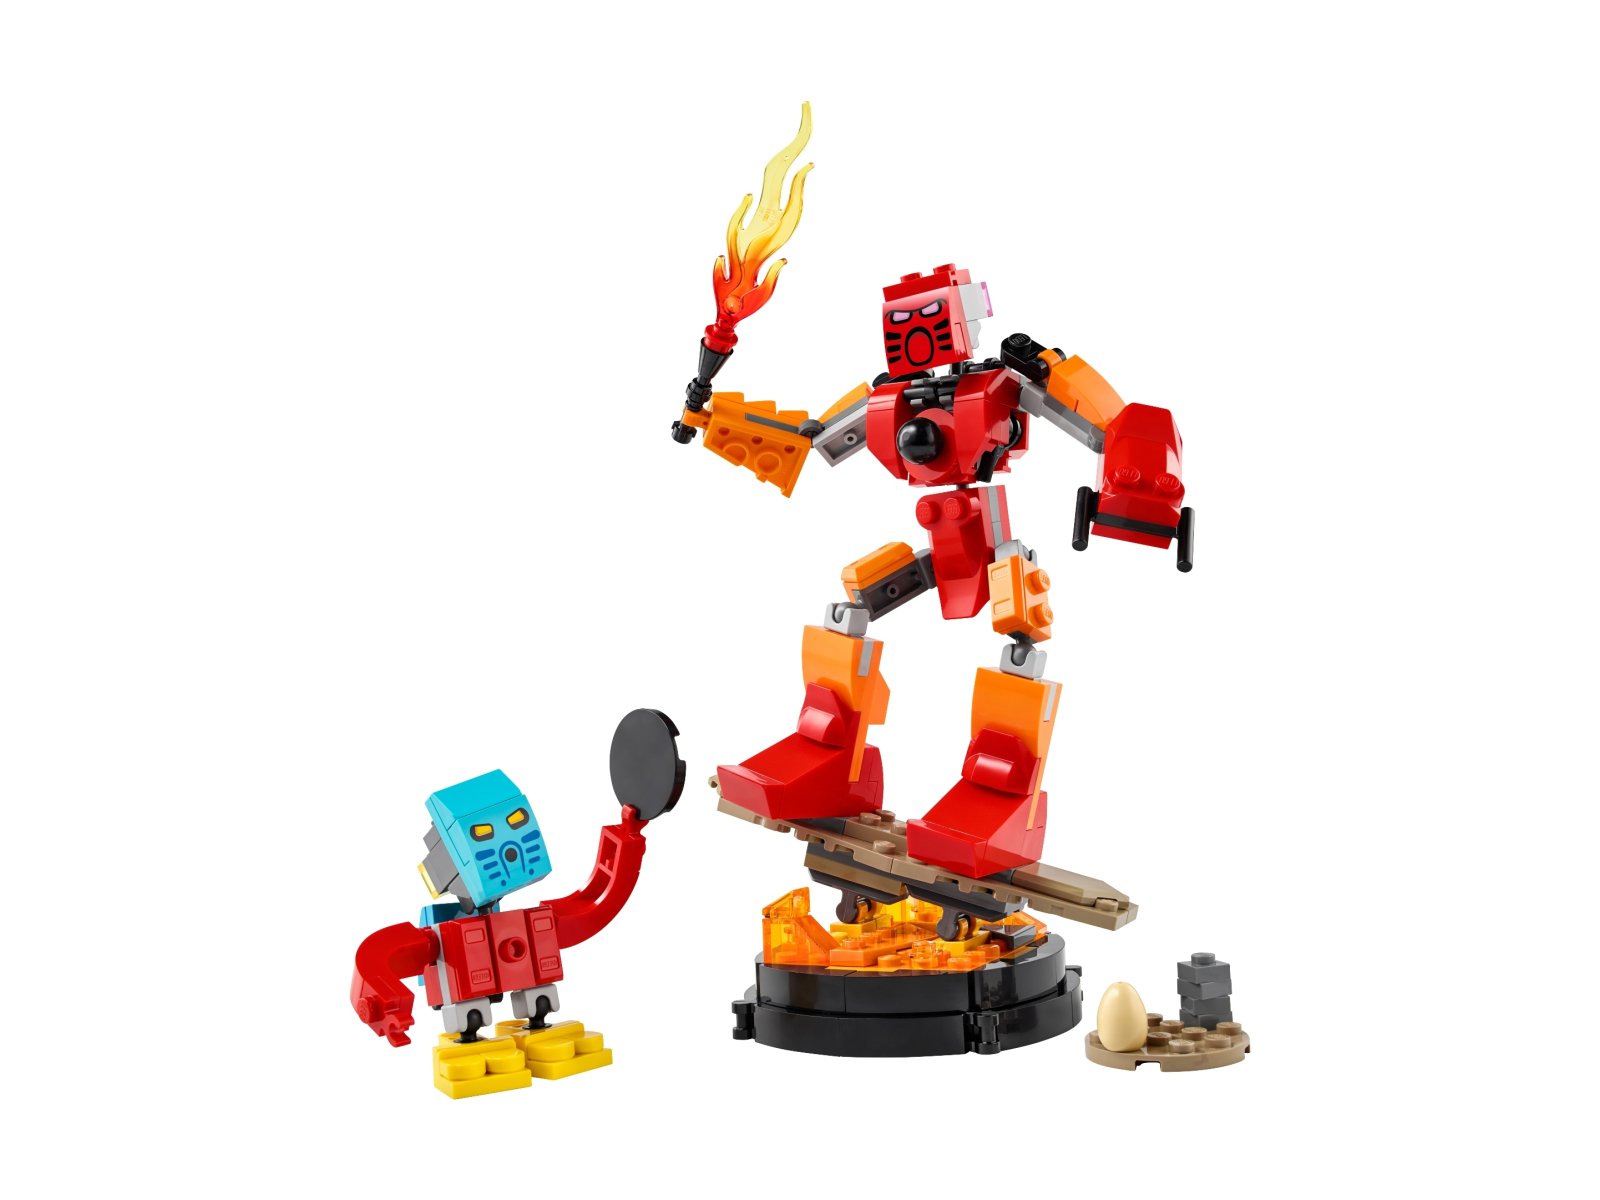 LEGO Bionicle 40581 Tahu i Takua